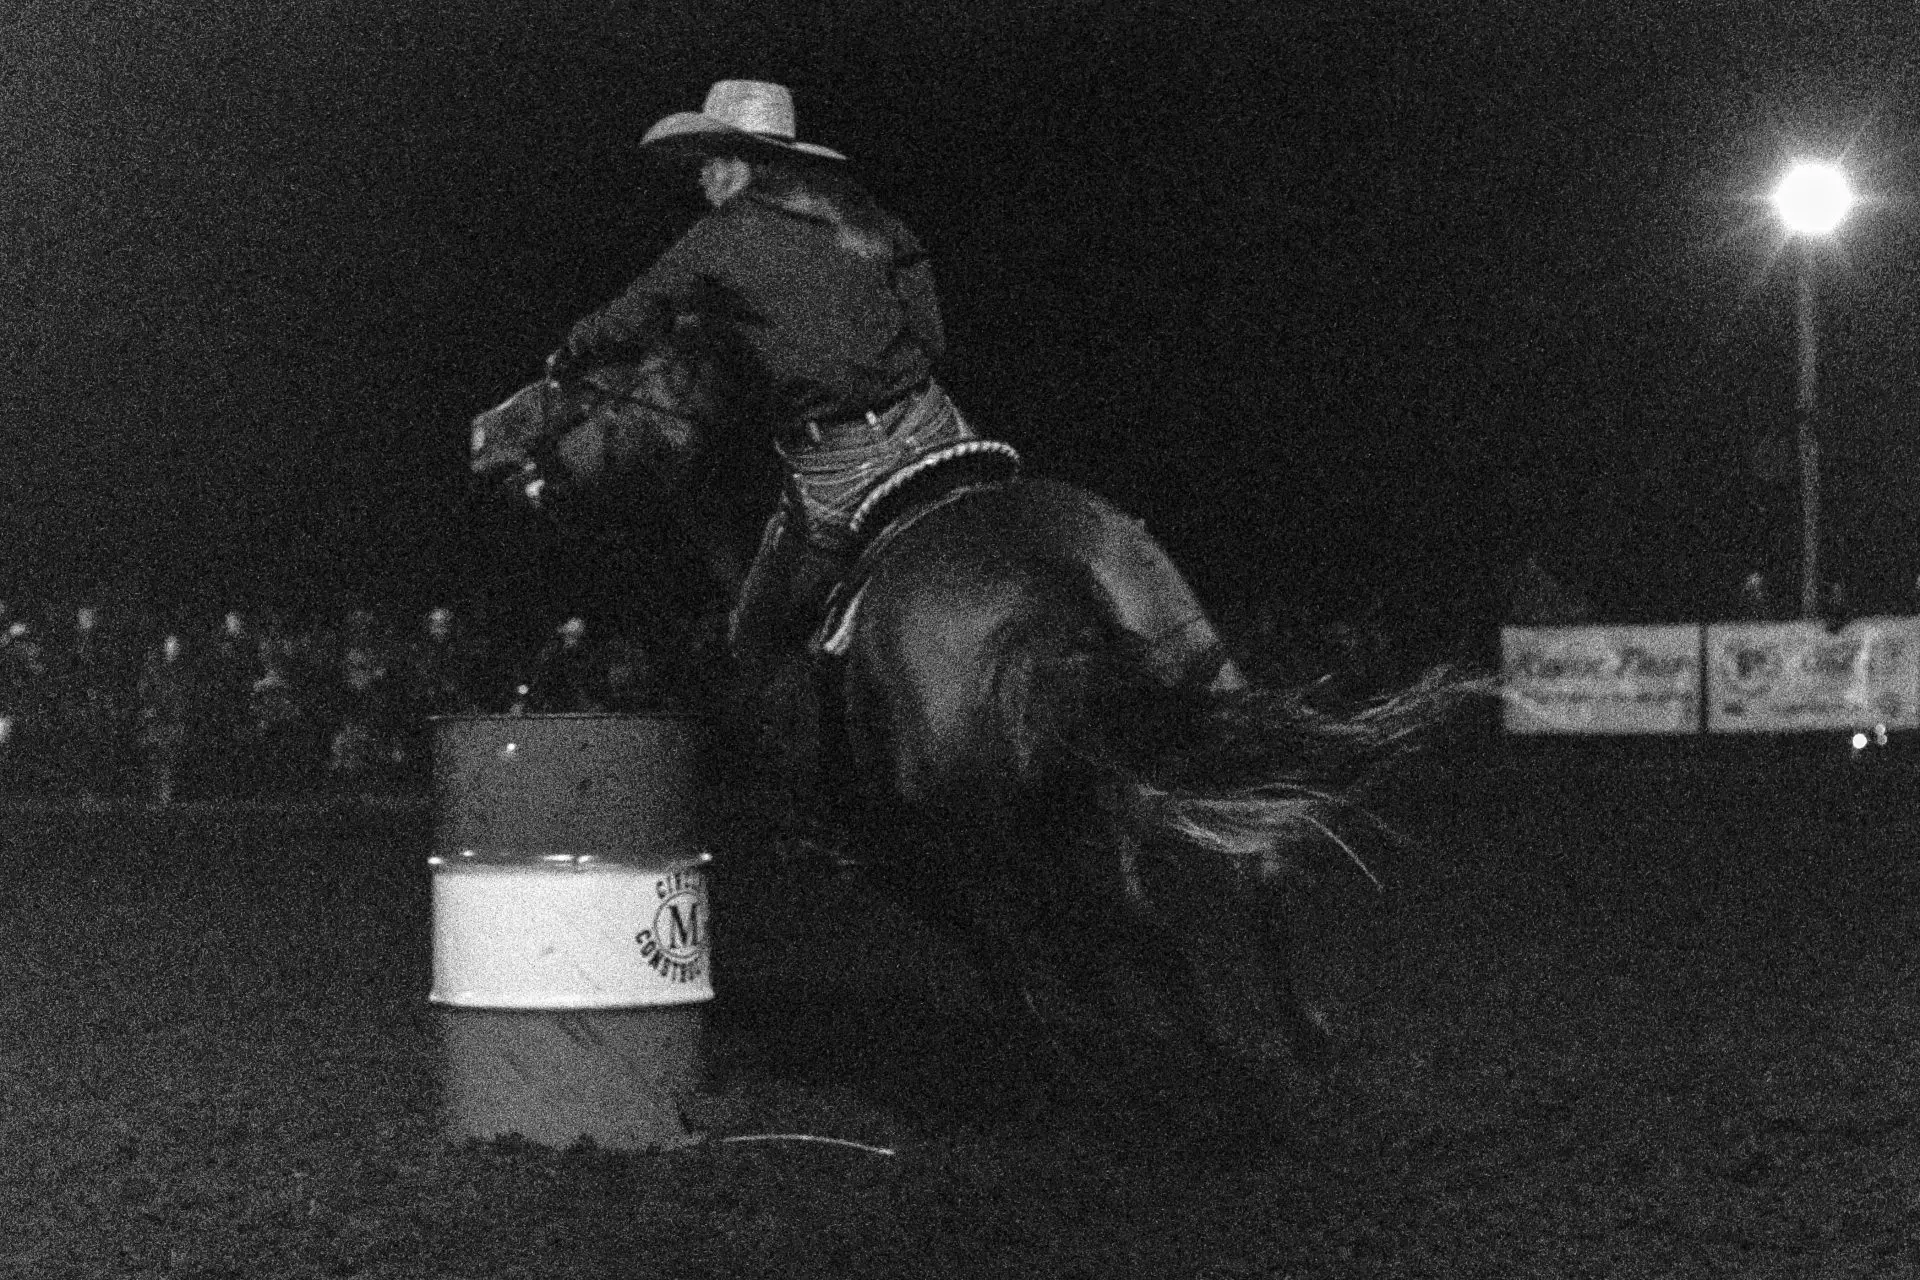 Female rider goign around barrel